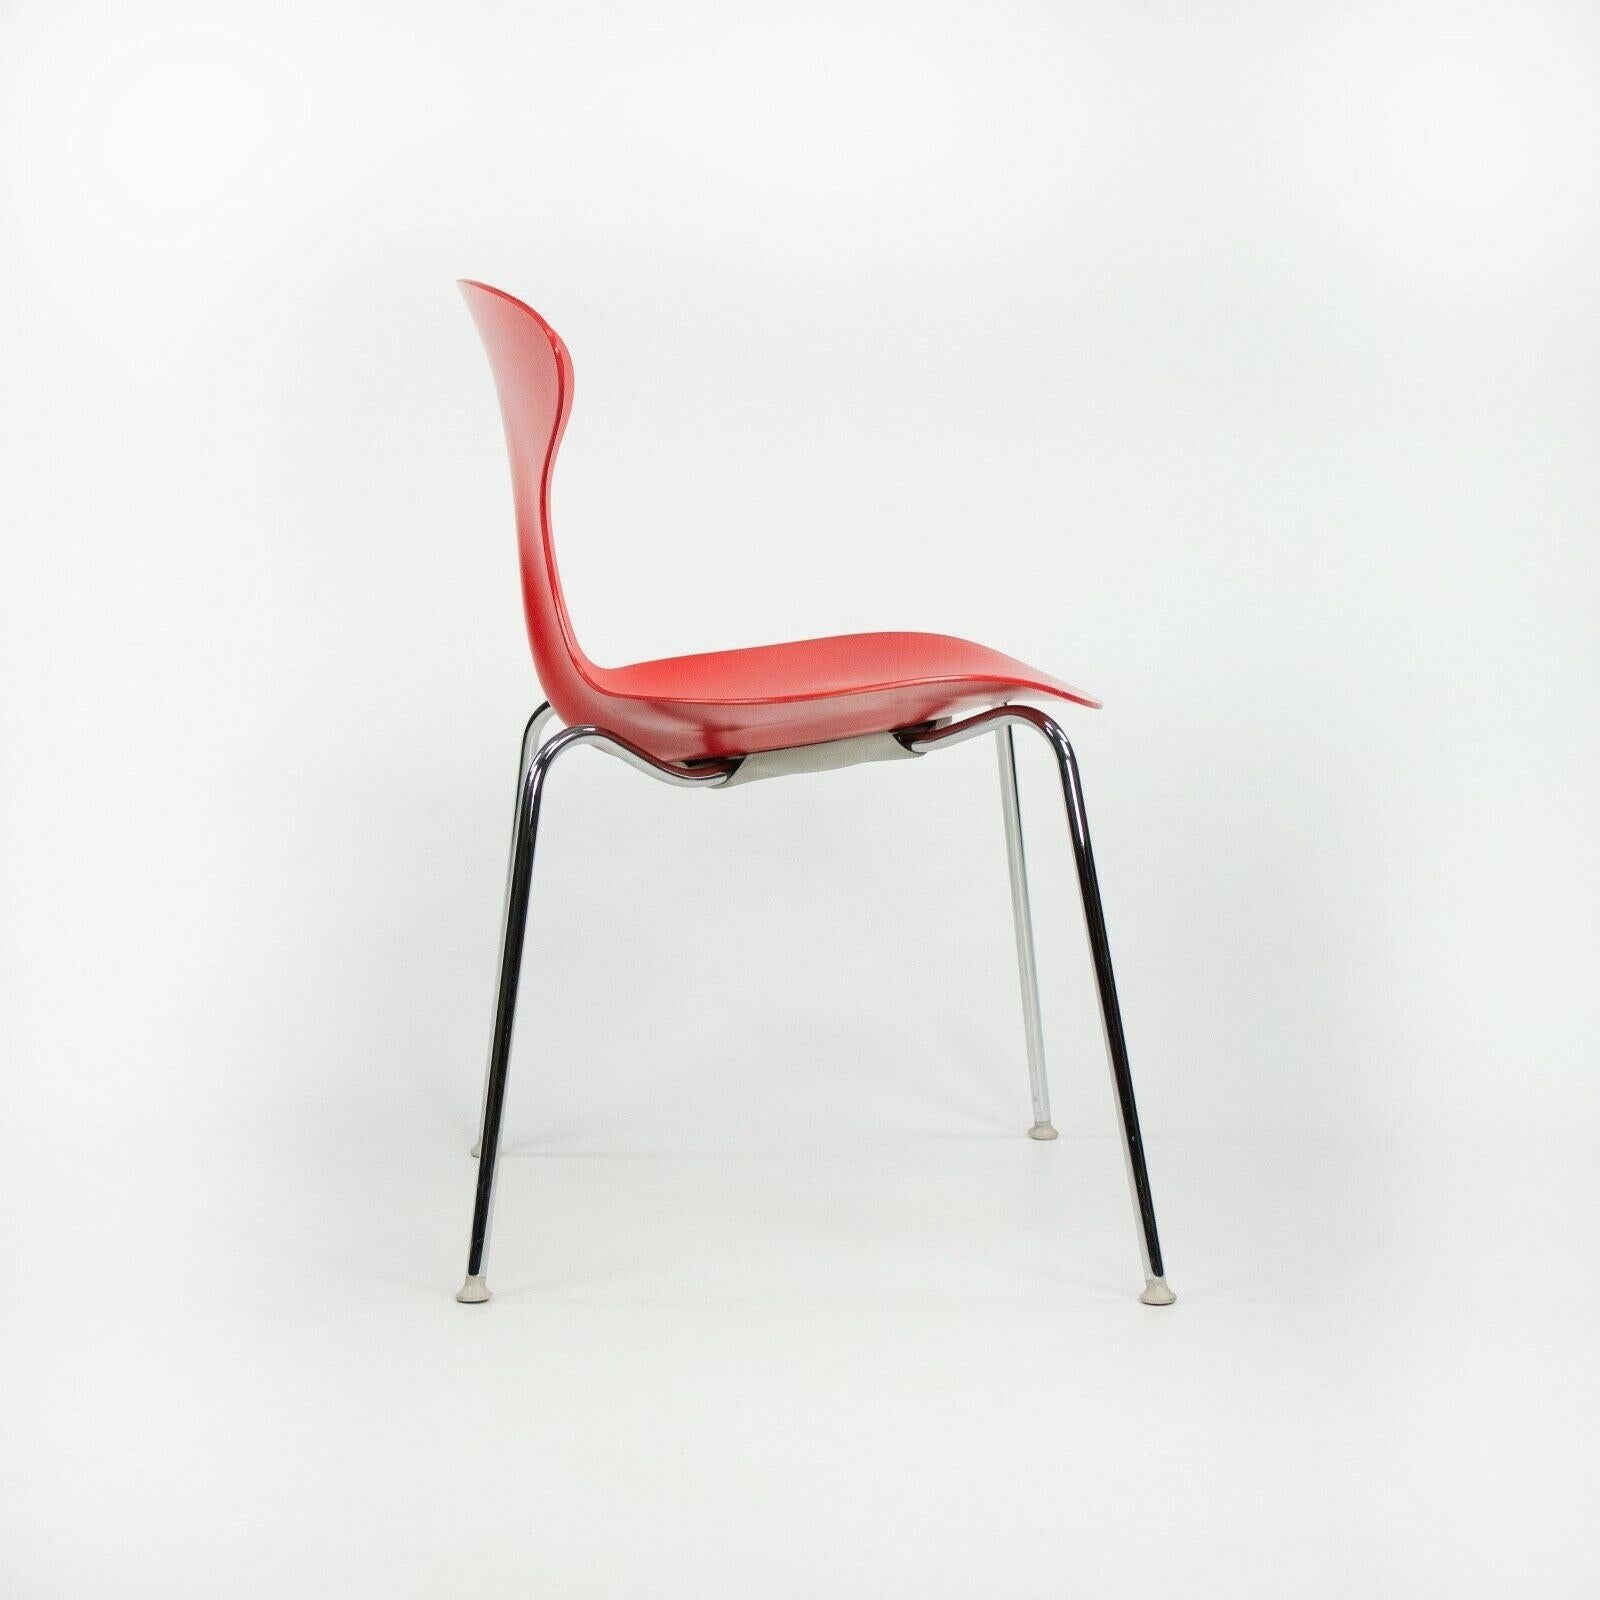 Modern 2010s Ross Lovegrove Orbit Chair by Bernhardt Design in Red Plastic Chrome Legs For Sale